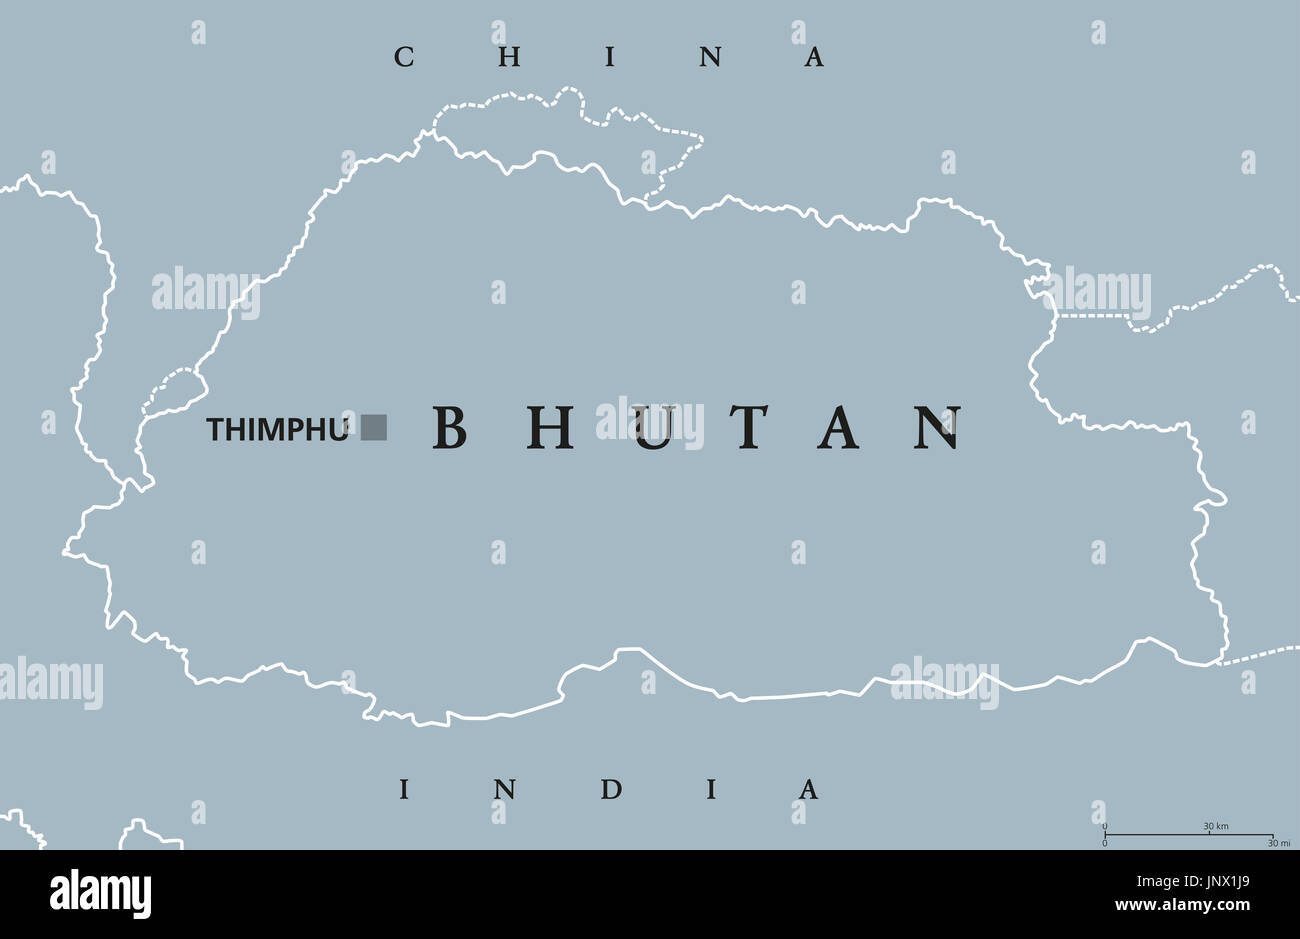 Bhutan politische Karte mit Hauptstadt Thimphu und Grenzen. Englisch beschriften. Binnenstaat Königreich in Südasien im östlichen Himalaya. Abbildung. Stockfoto